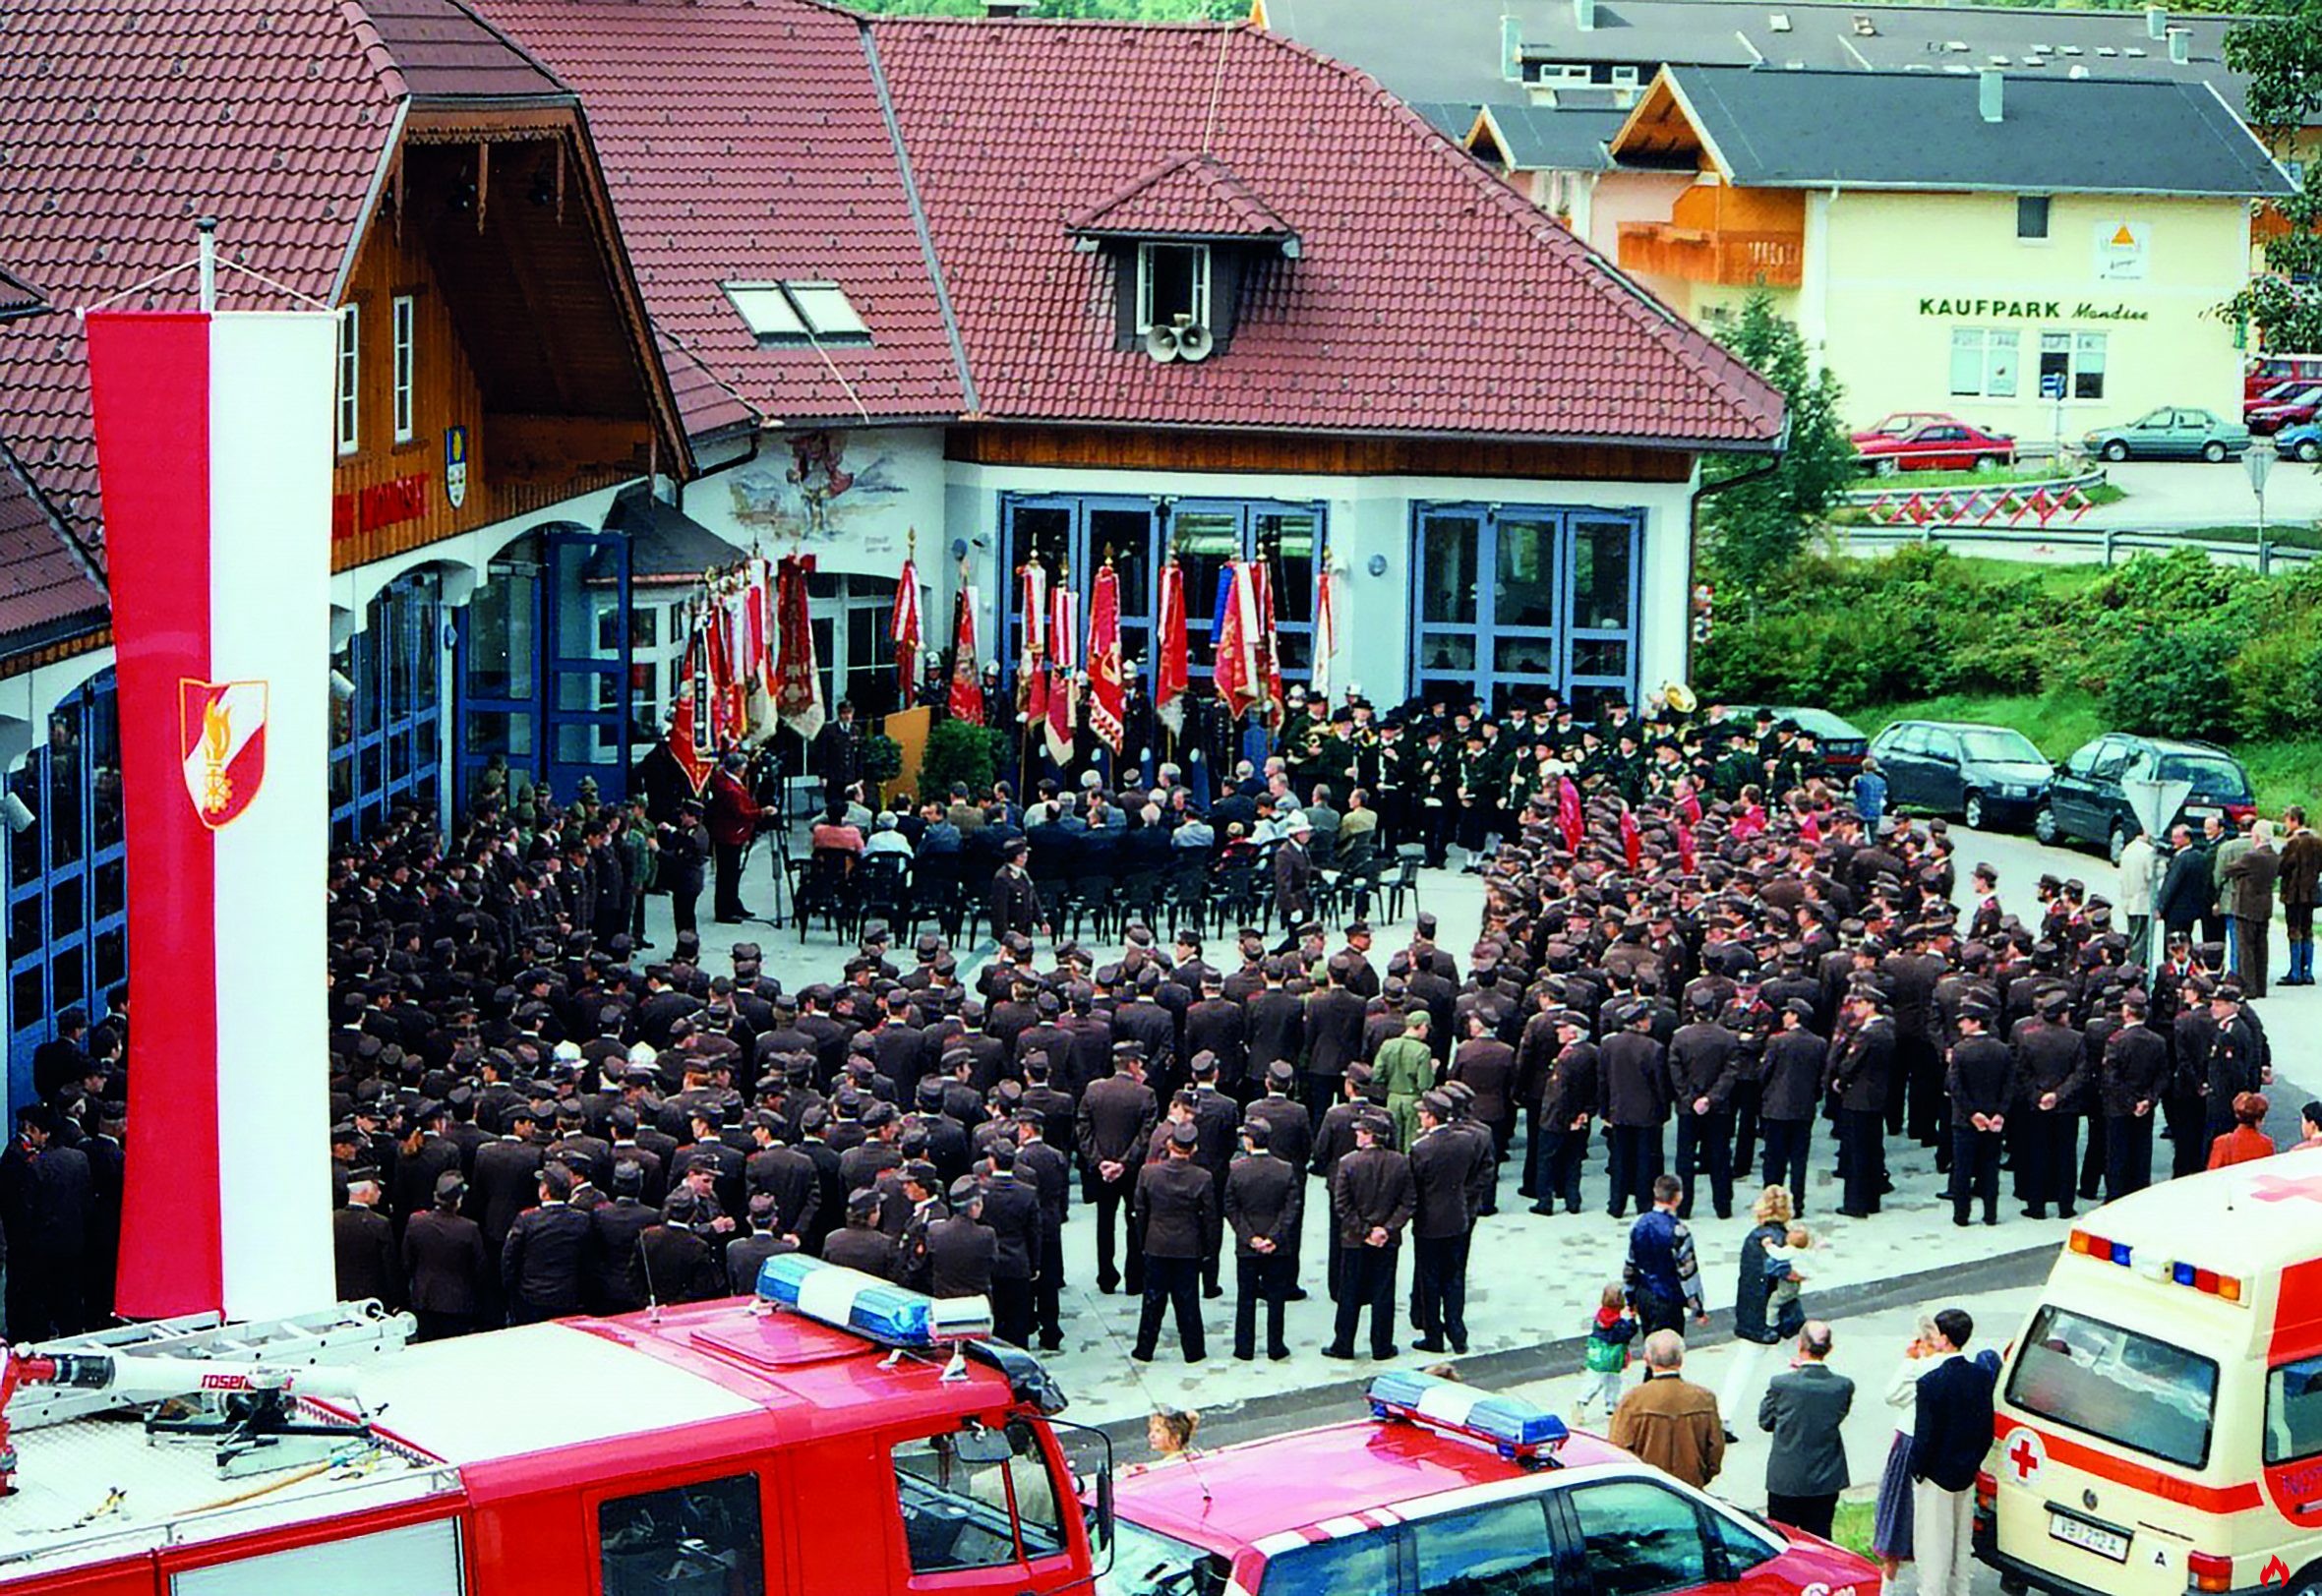 1997 Feuerwehr Mondsee neues Feuerwehrhaus